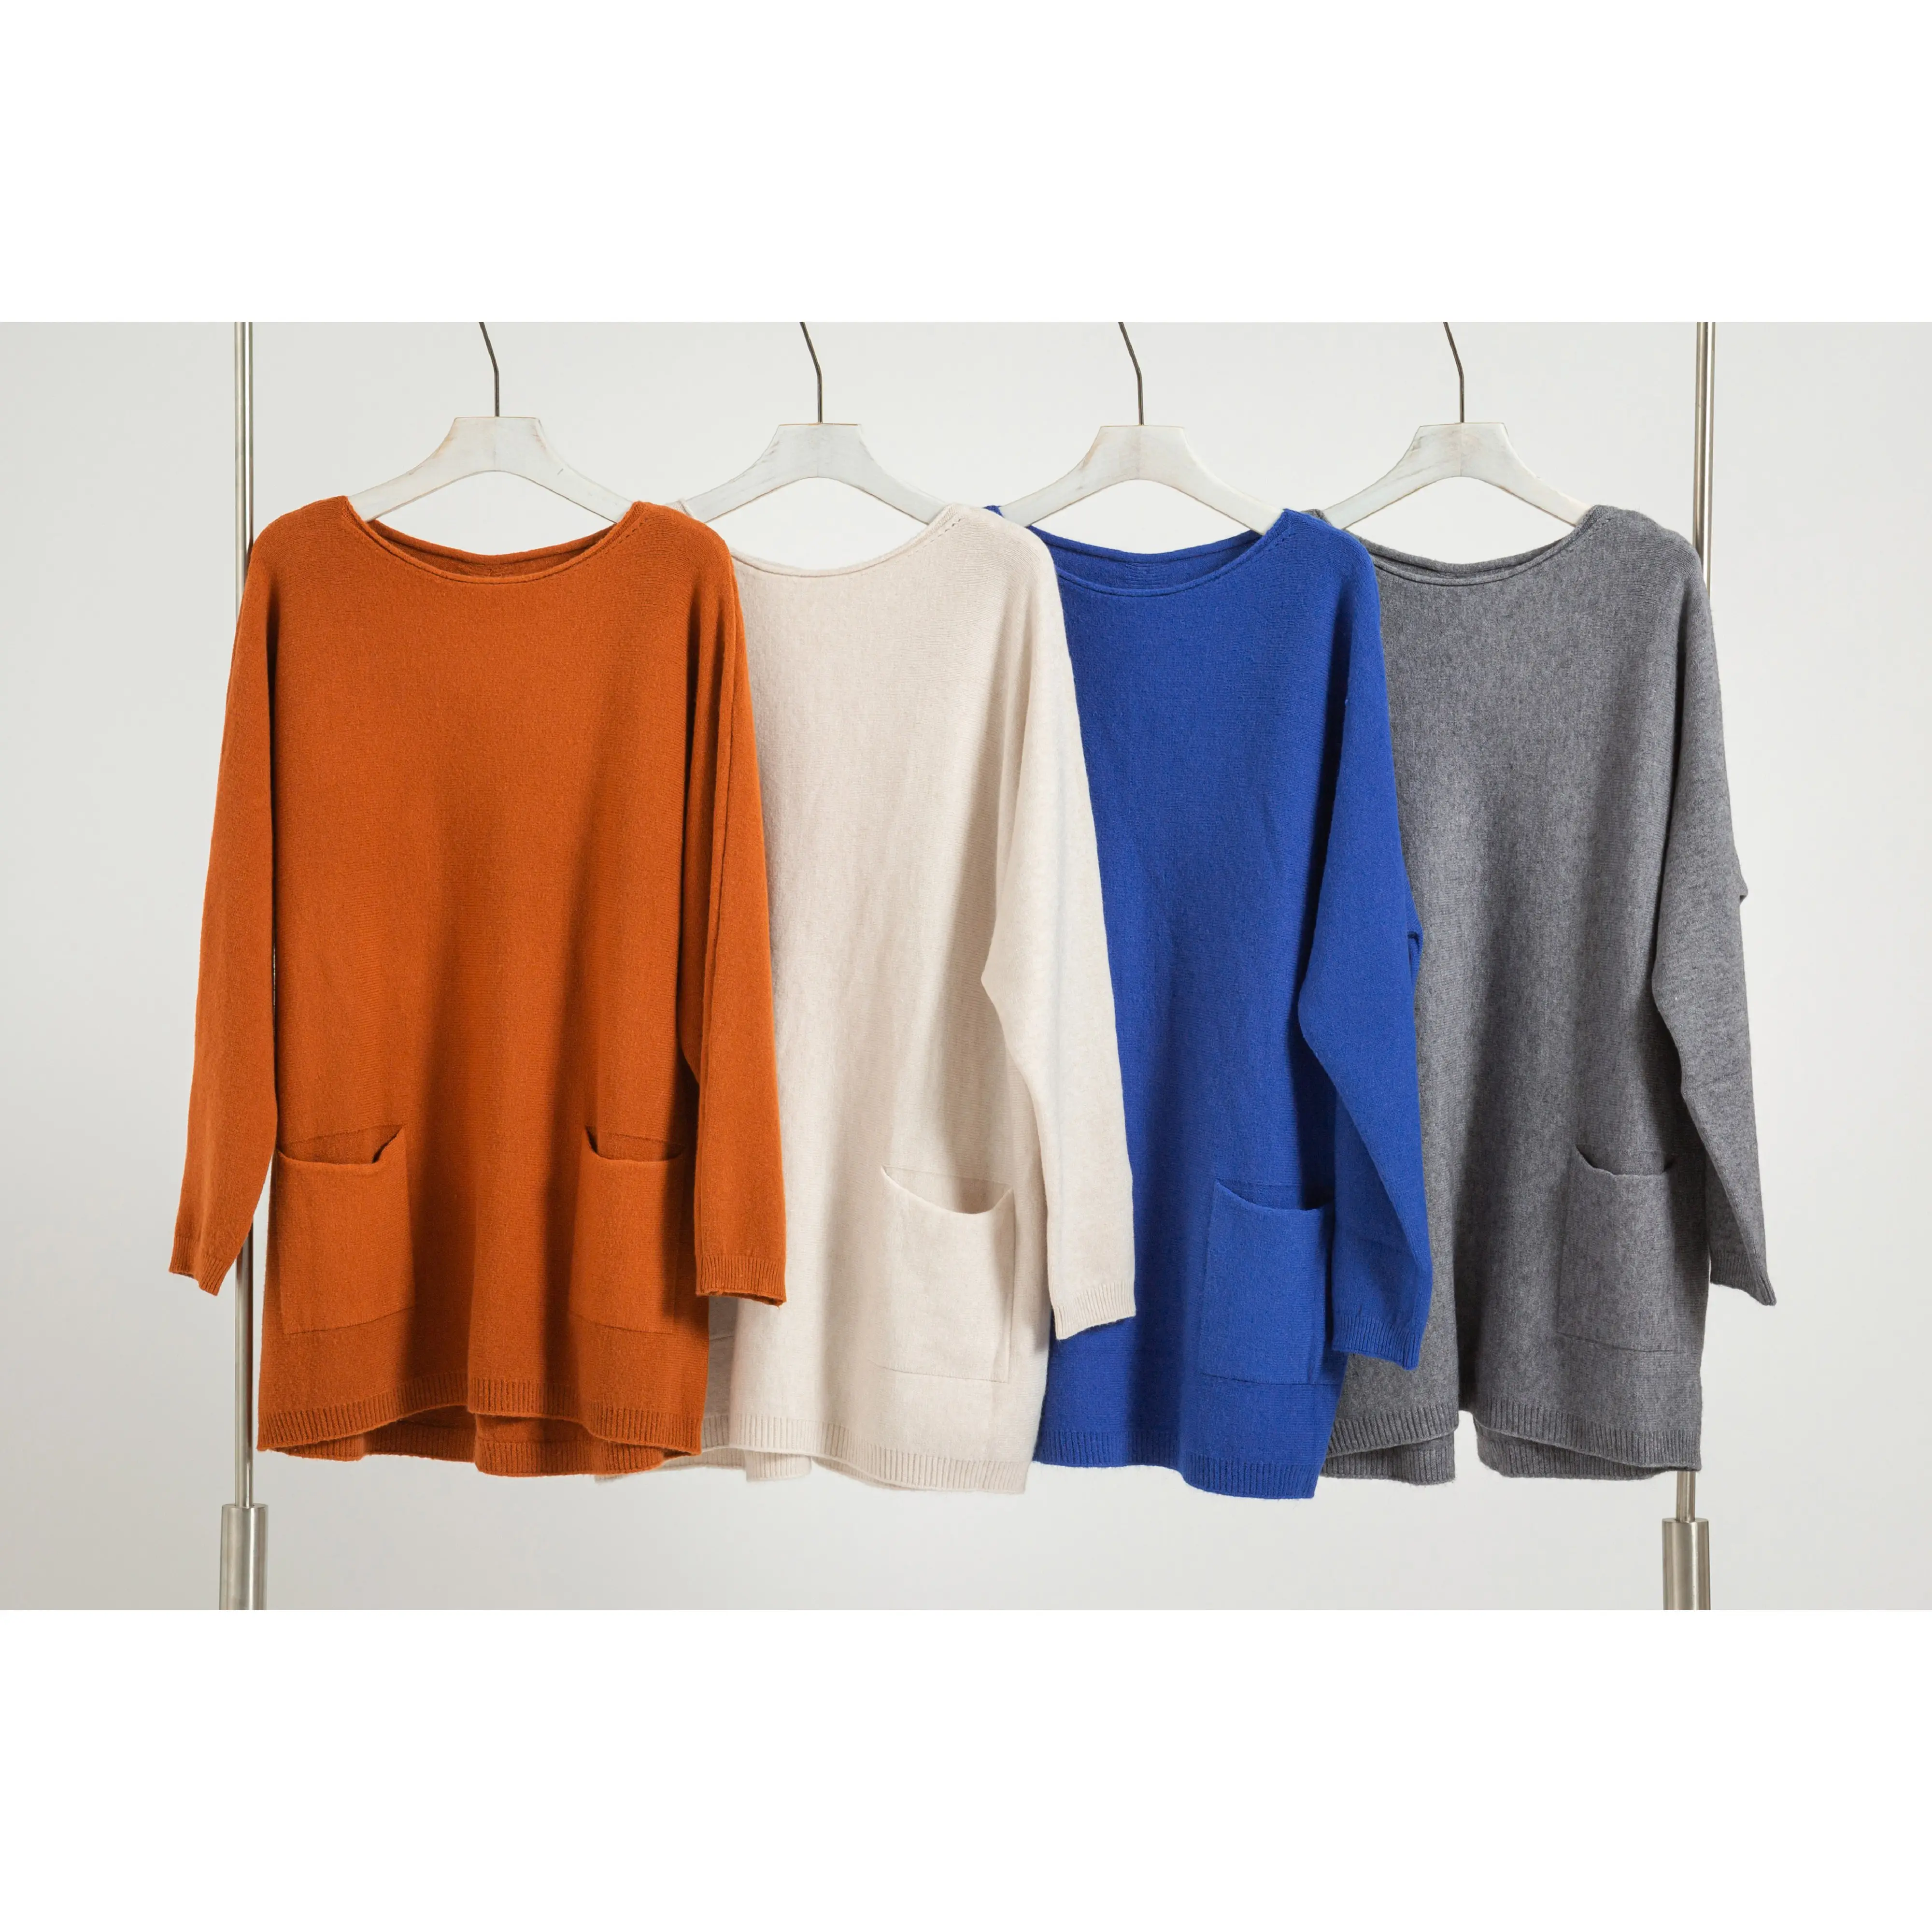 Ronda cuello Plus tamaño de manga larga tejido jersey con bolsillo jersey para las mujeres (4 colores)